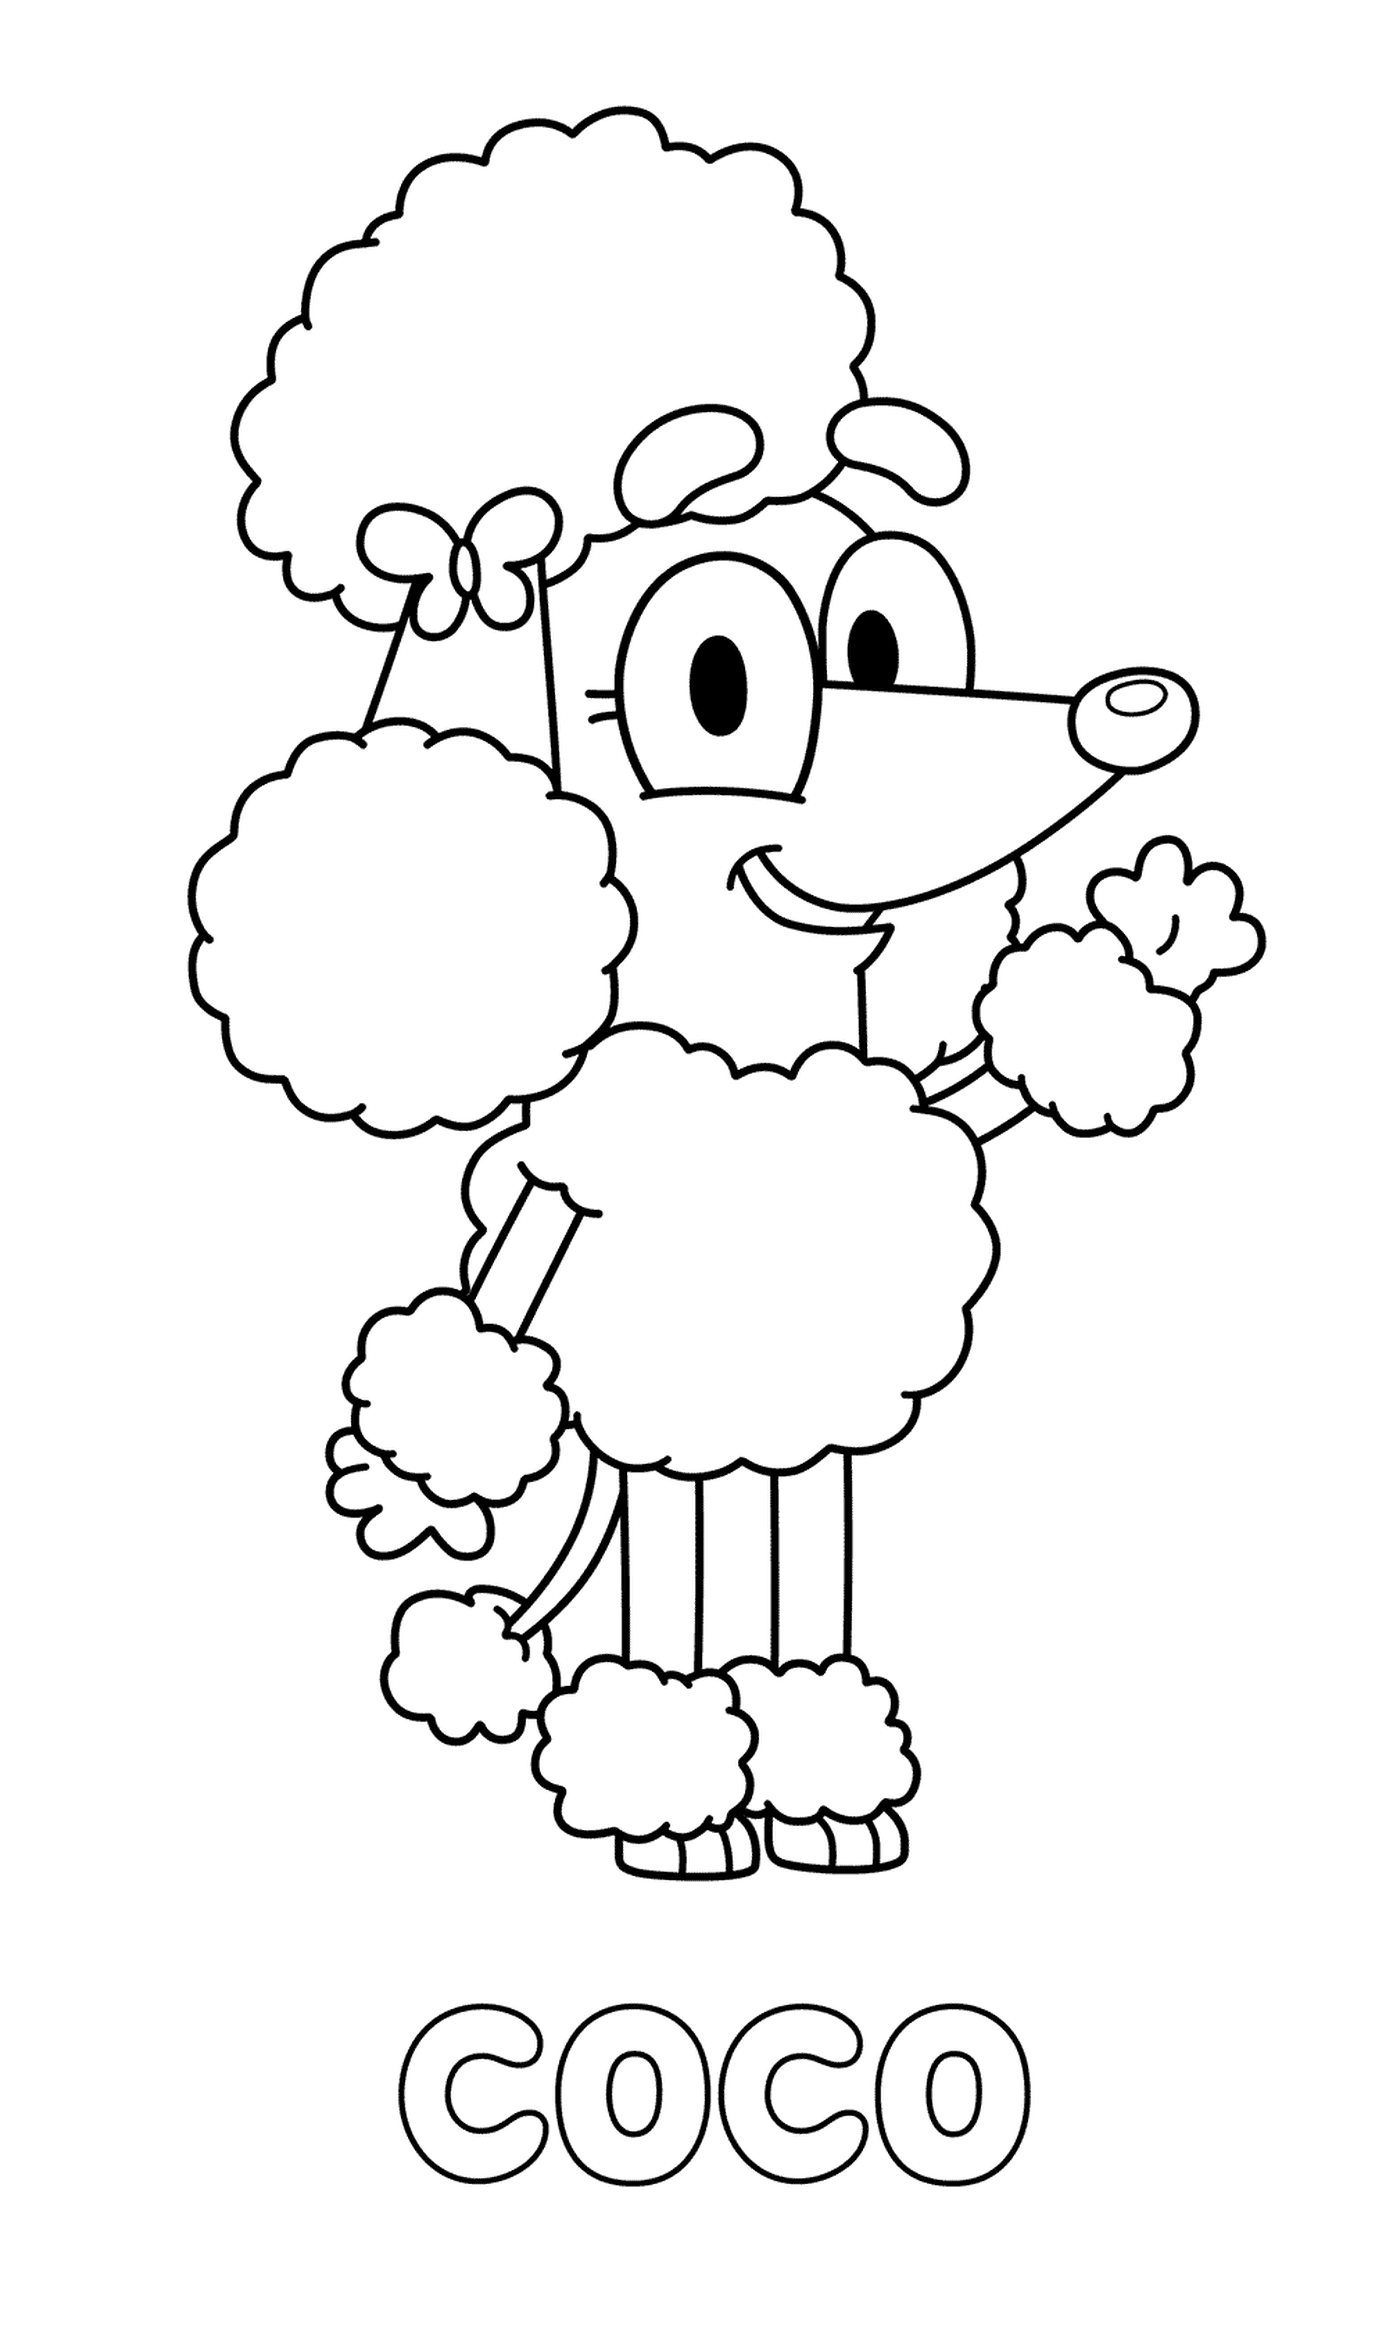  Um poodle de desenho animado chamado Coco com uma flor na cabeça 